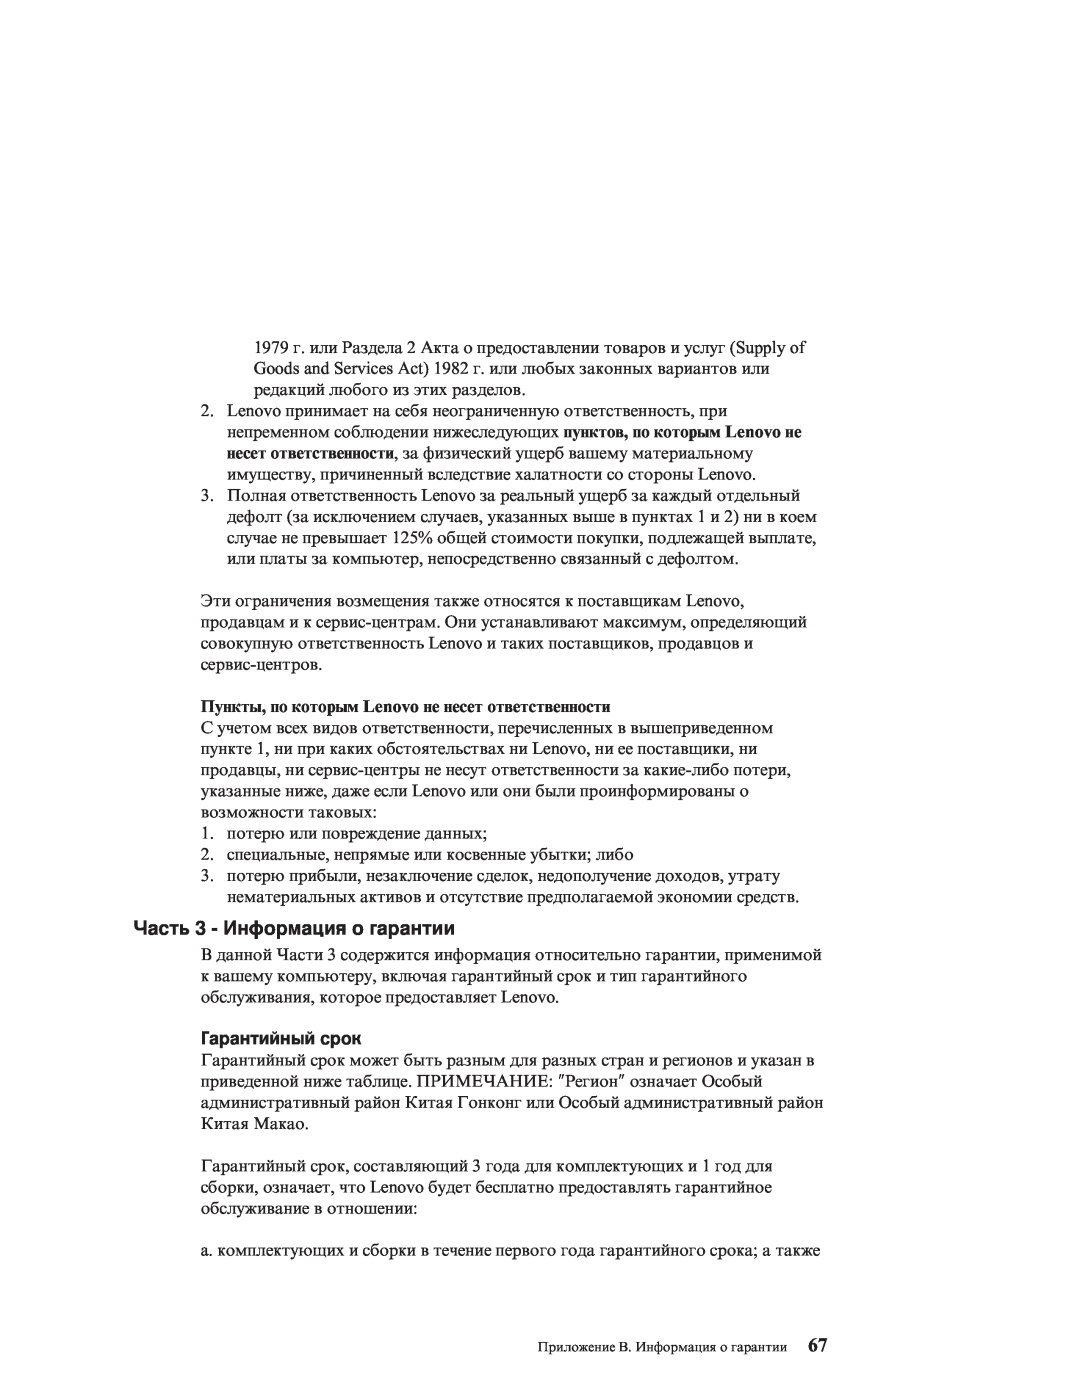 IBM R51E manual Часть 3 - Информация о гарантии, Гарантийный срок, Пункты, по которым Lenovo не несет ответственности 